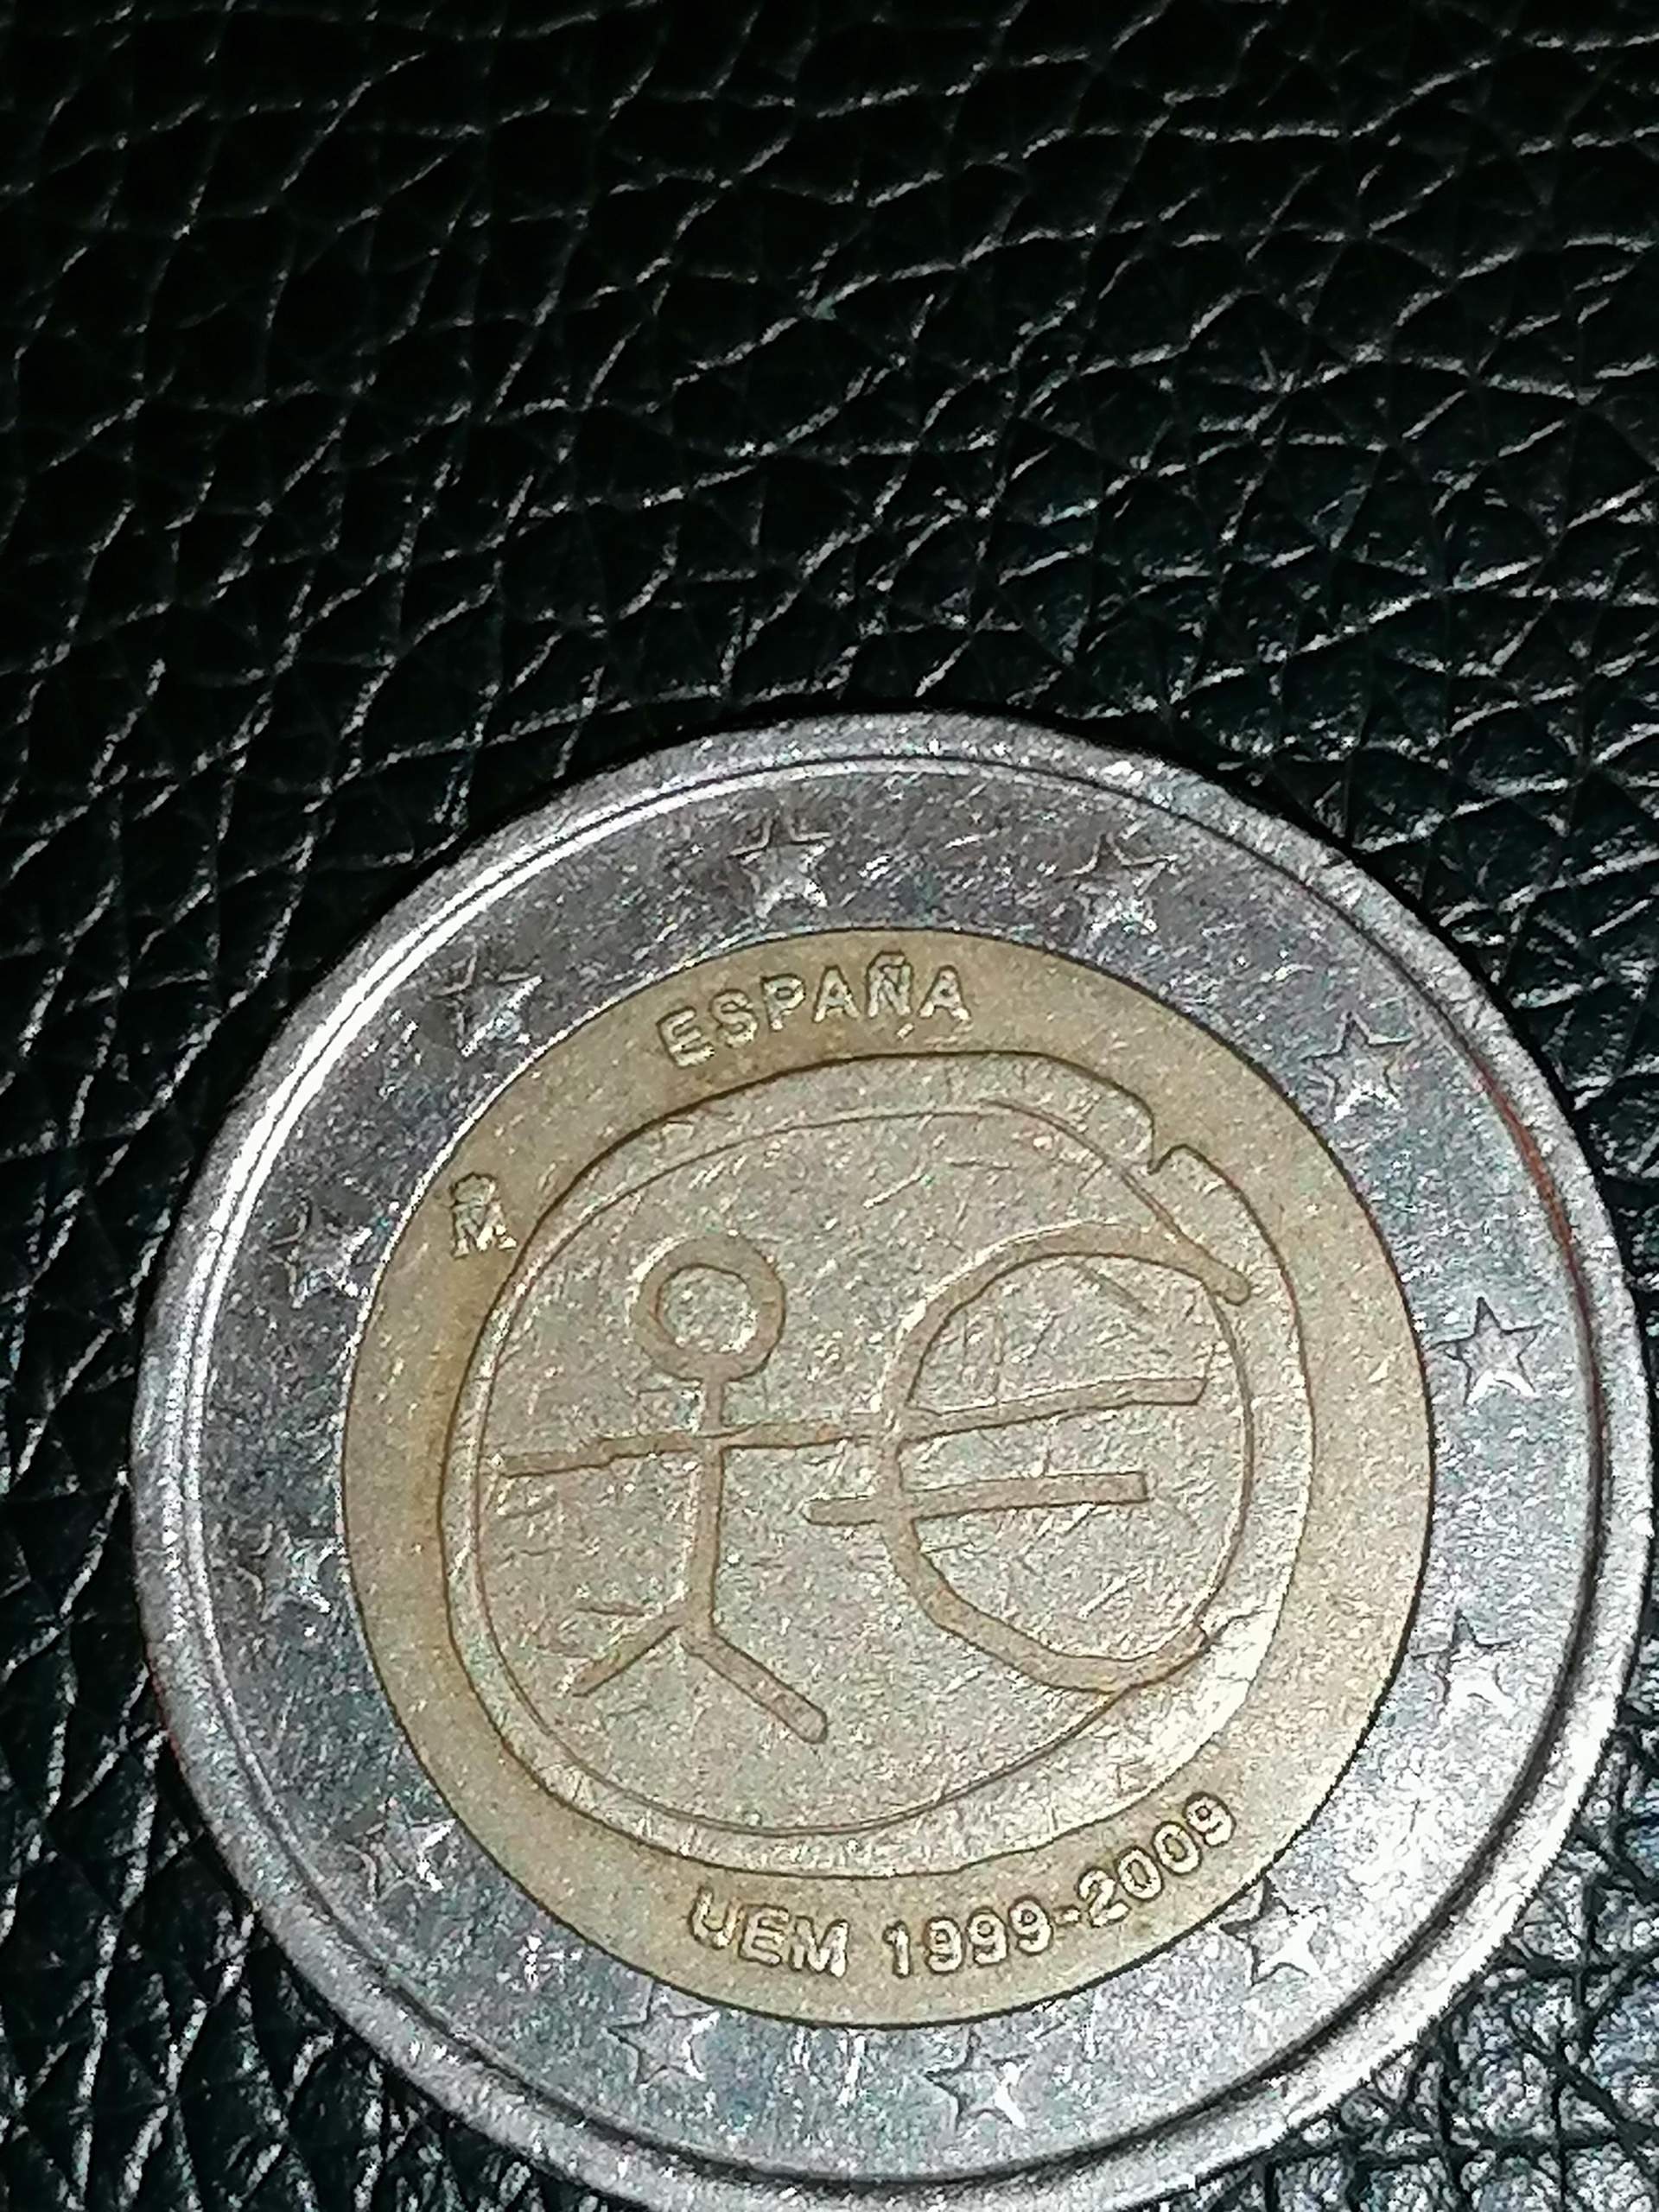 Seltene 2 euro Münze? (Geld, Münzen)